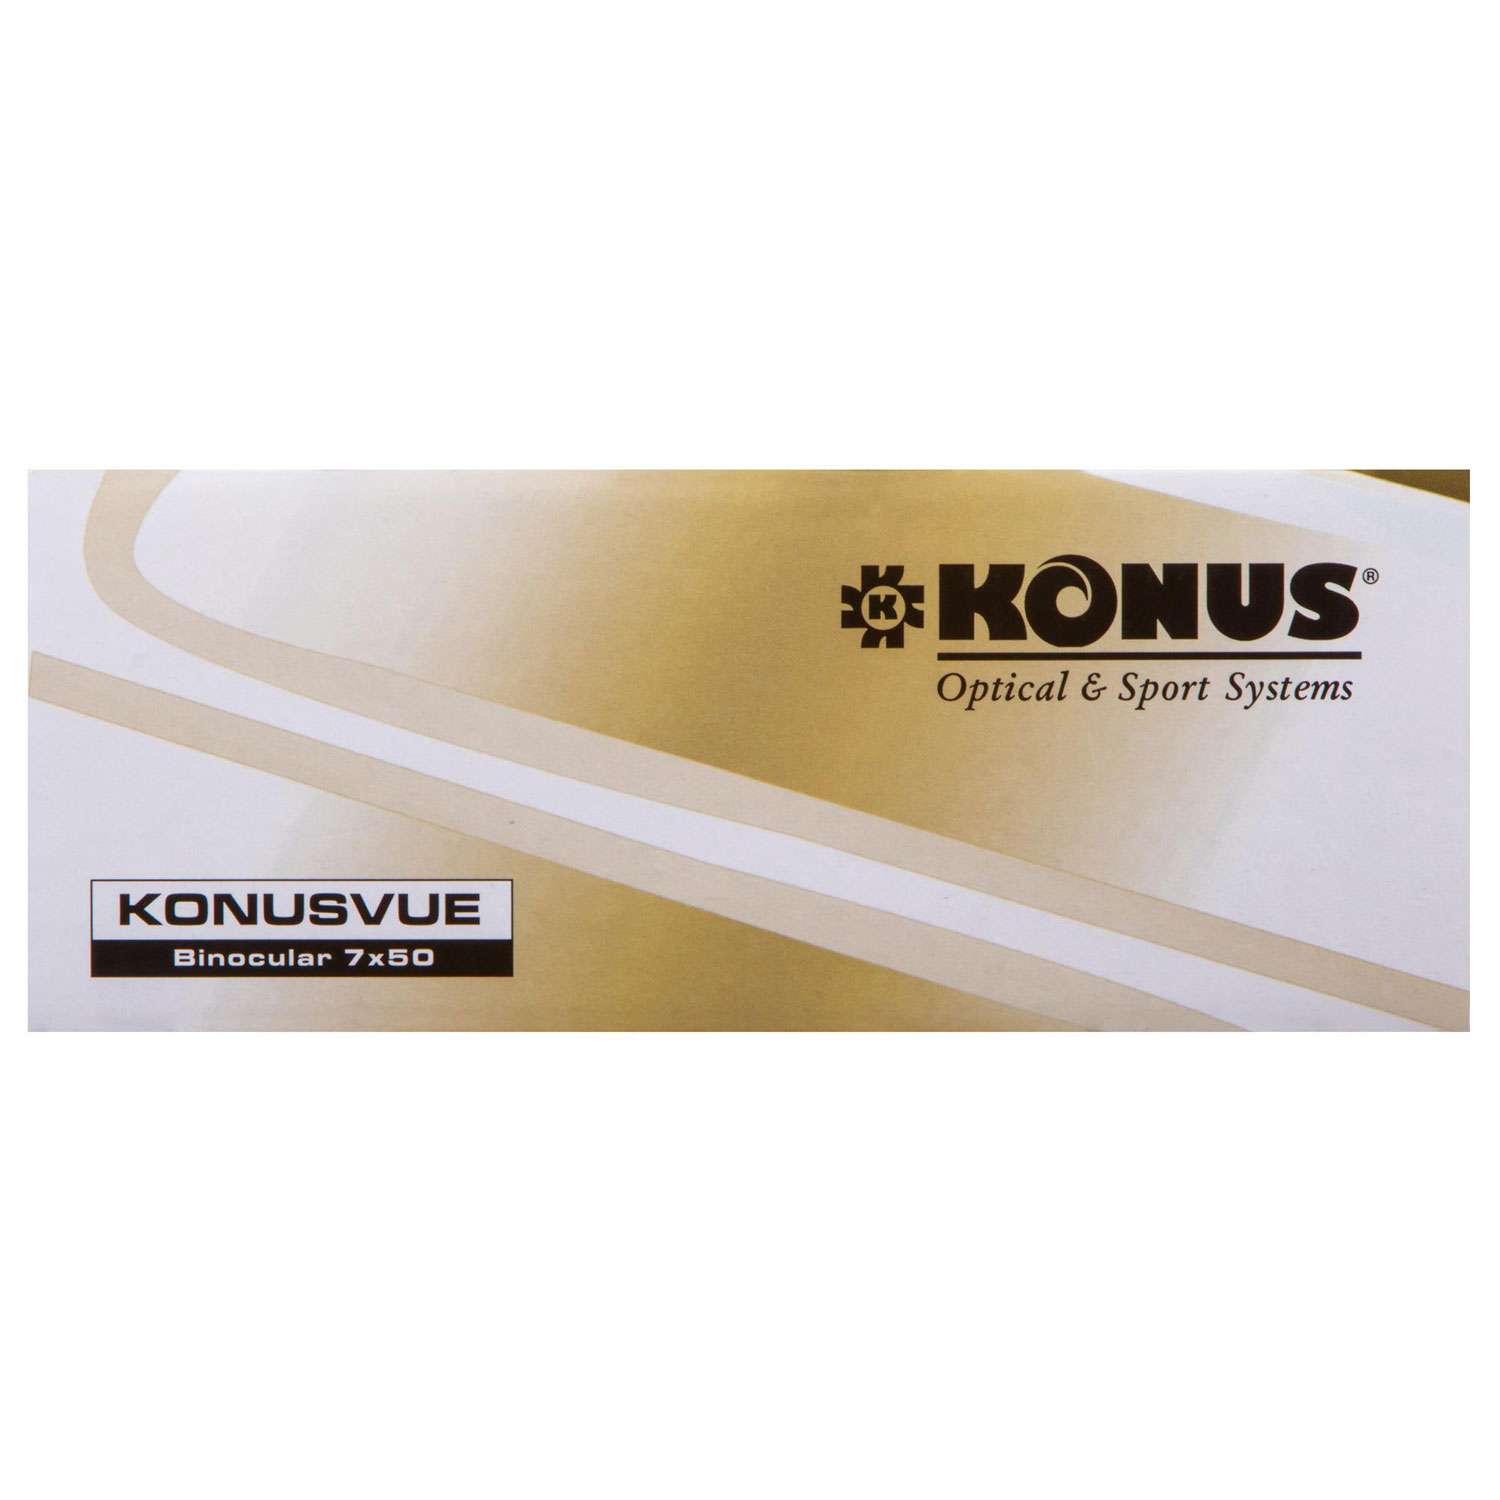 Бинокль Konus Konusvue 7x50 - фото 16